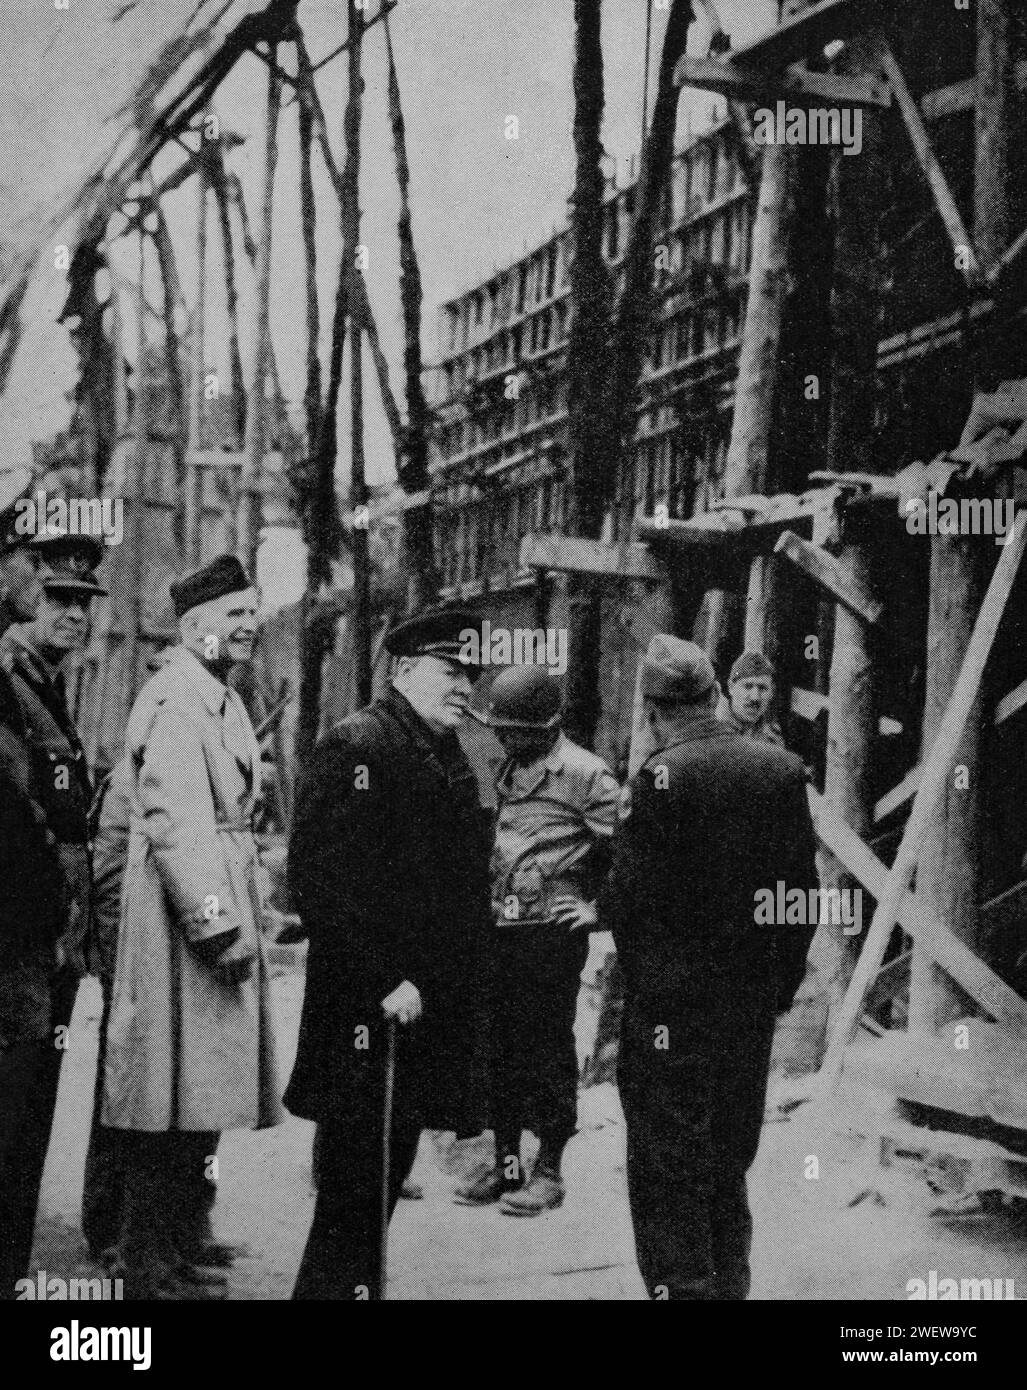 Winston Churchill visite un site de lancement de la bombe volante capturée dans la péninsule de Cherbourg, quelques semaines après le jour J du 6 juin 1944, pendant la Seconde Guerre mondiale. Banque D'Images